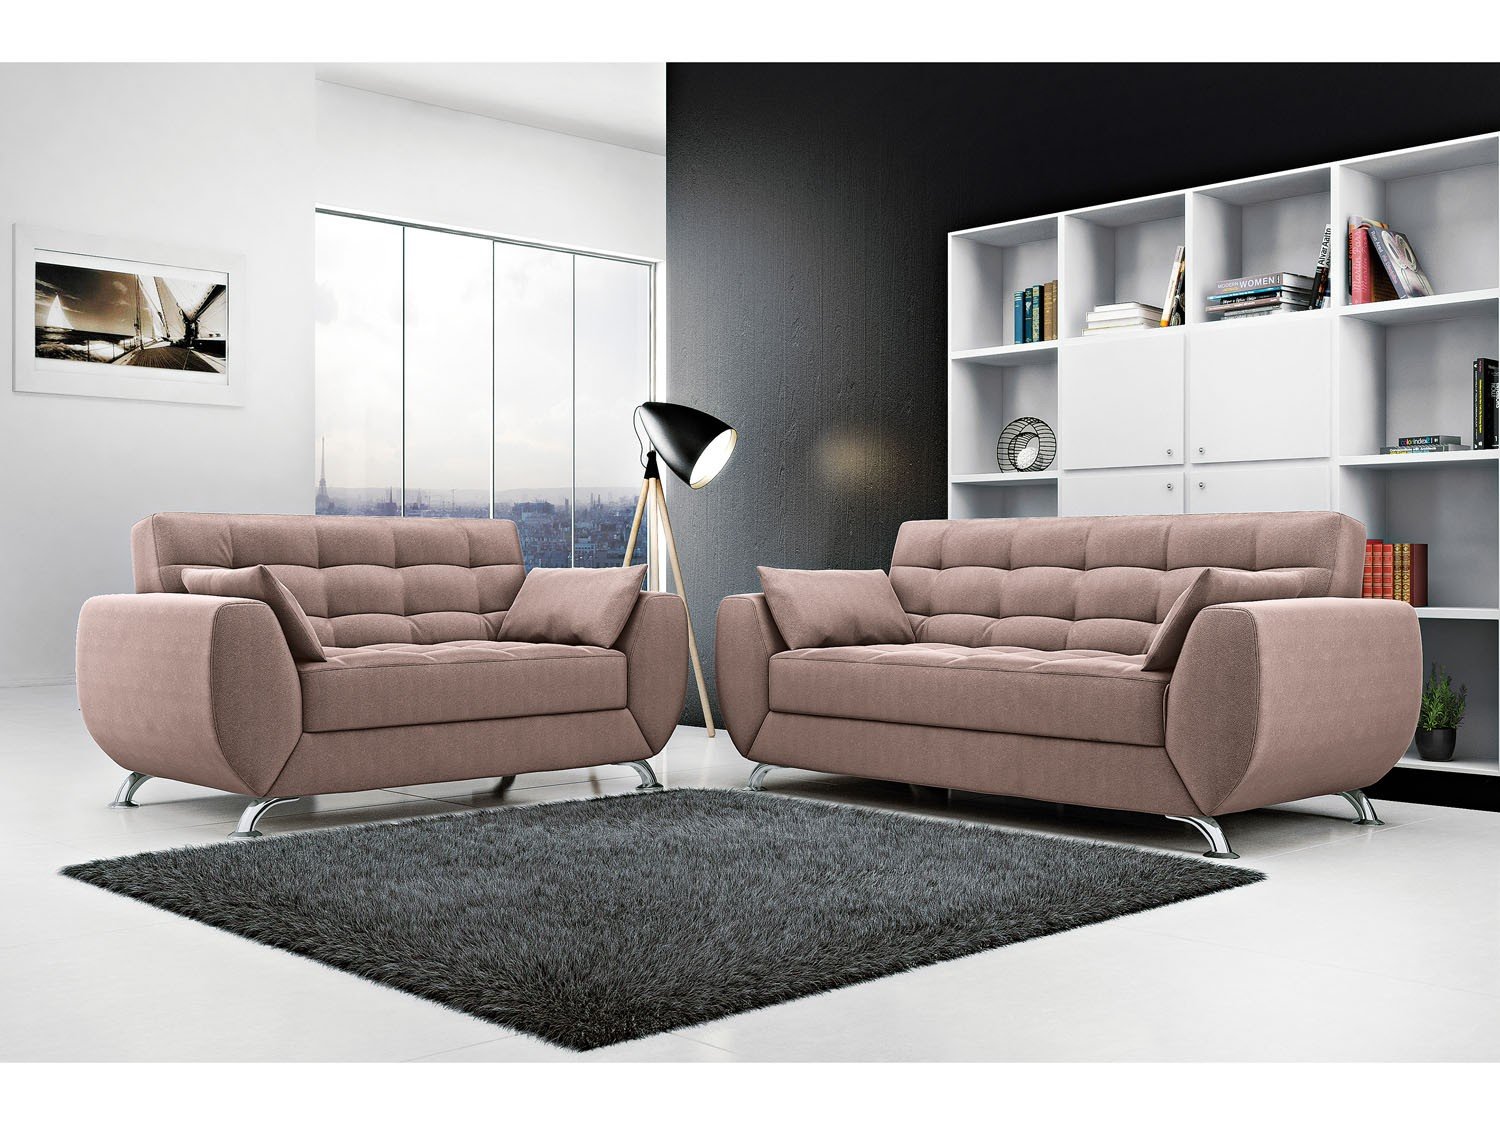 Details 48 modelos de sofá